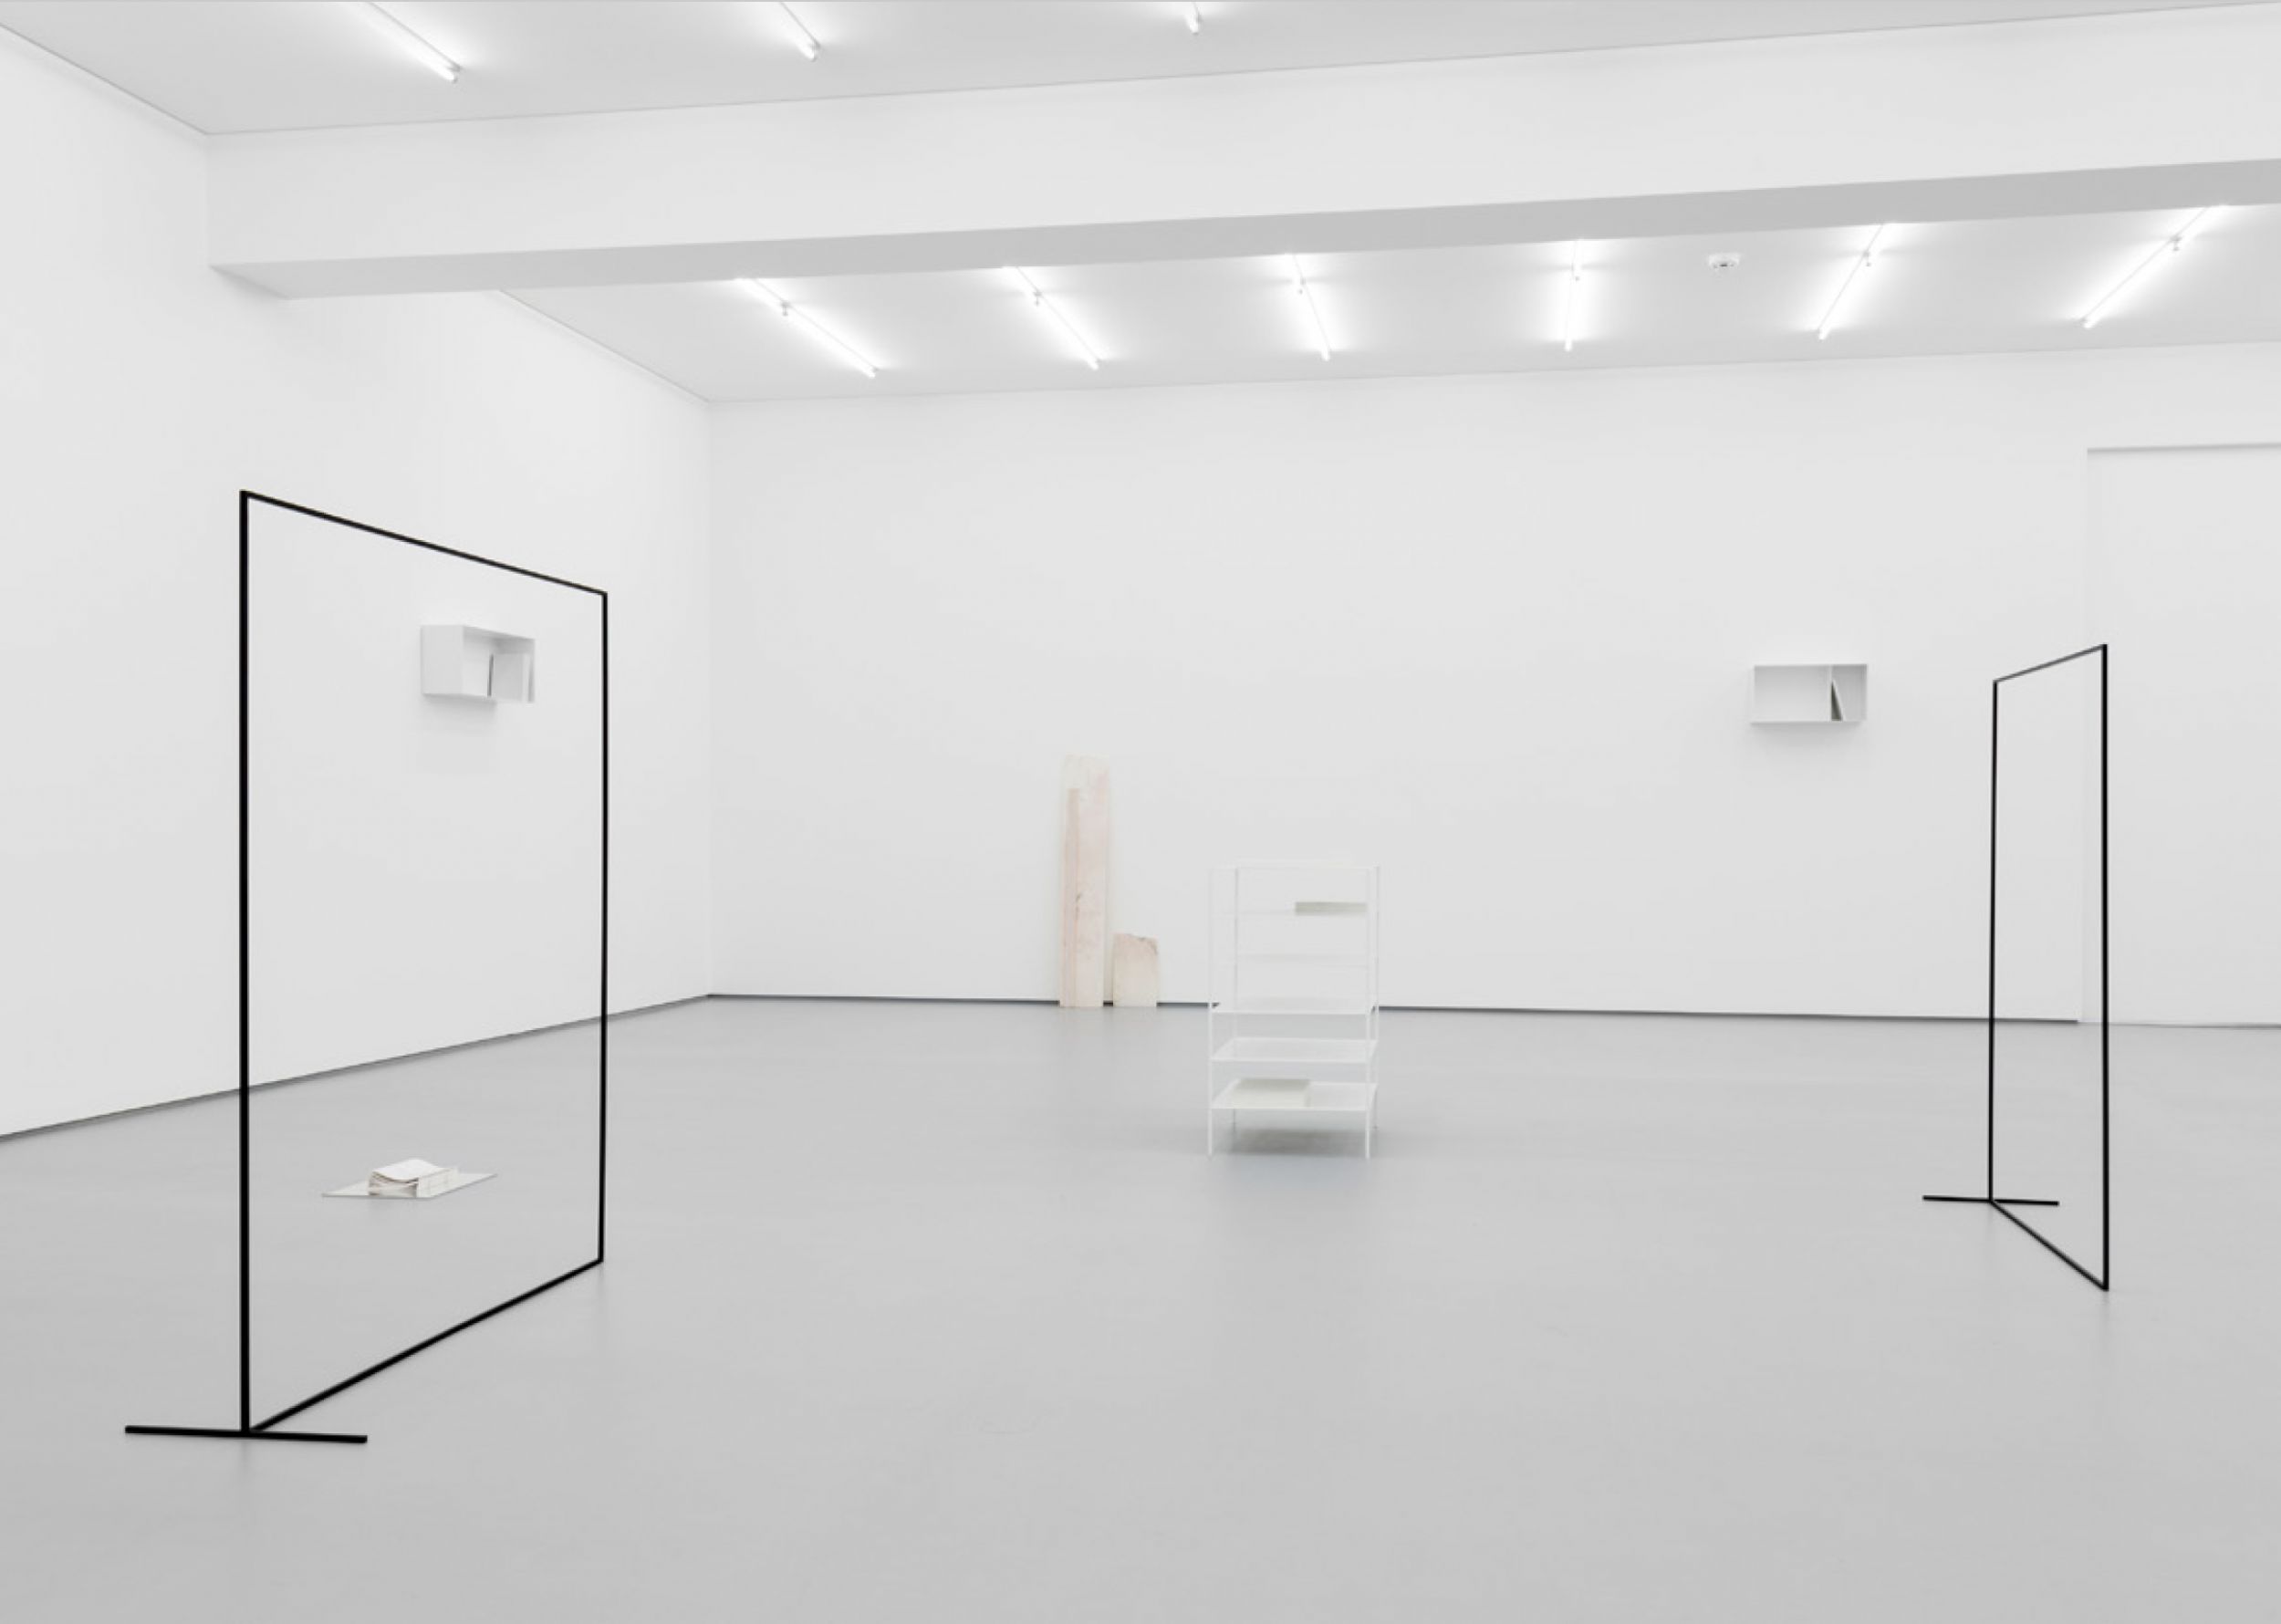 Exhibition view: Fourteen Works, Daniel Gustav Cramer, Galeria Vera Cortês, 2017
